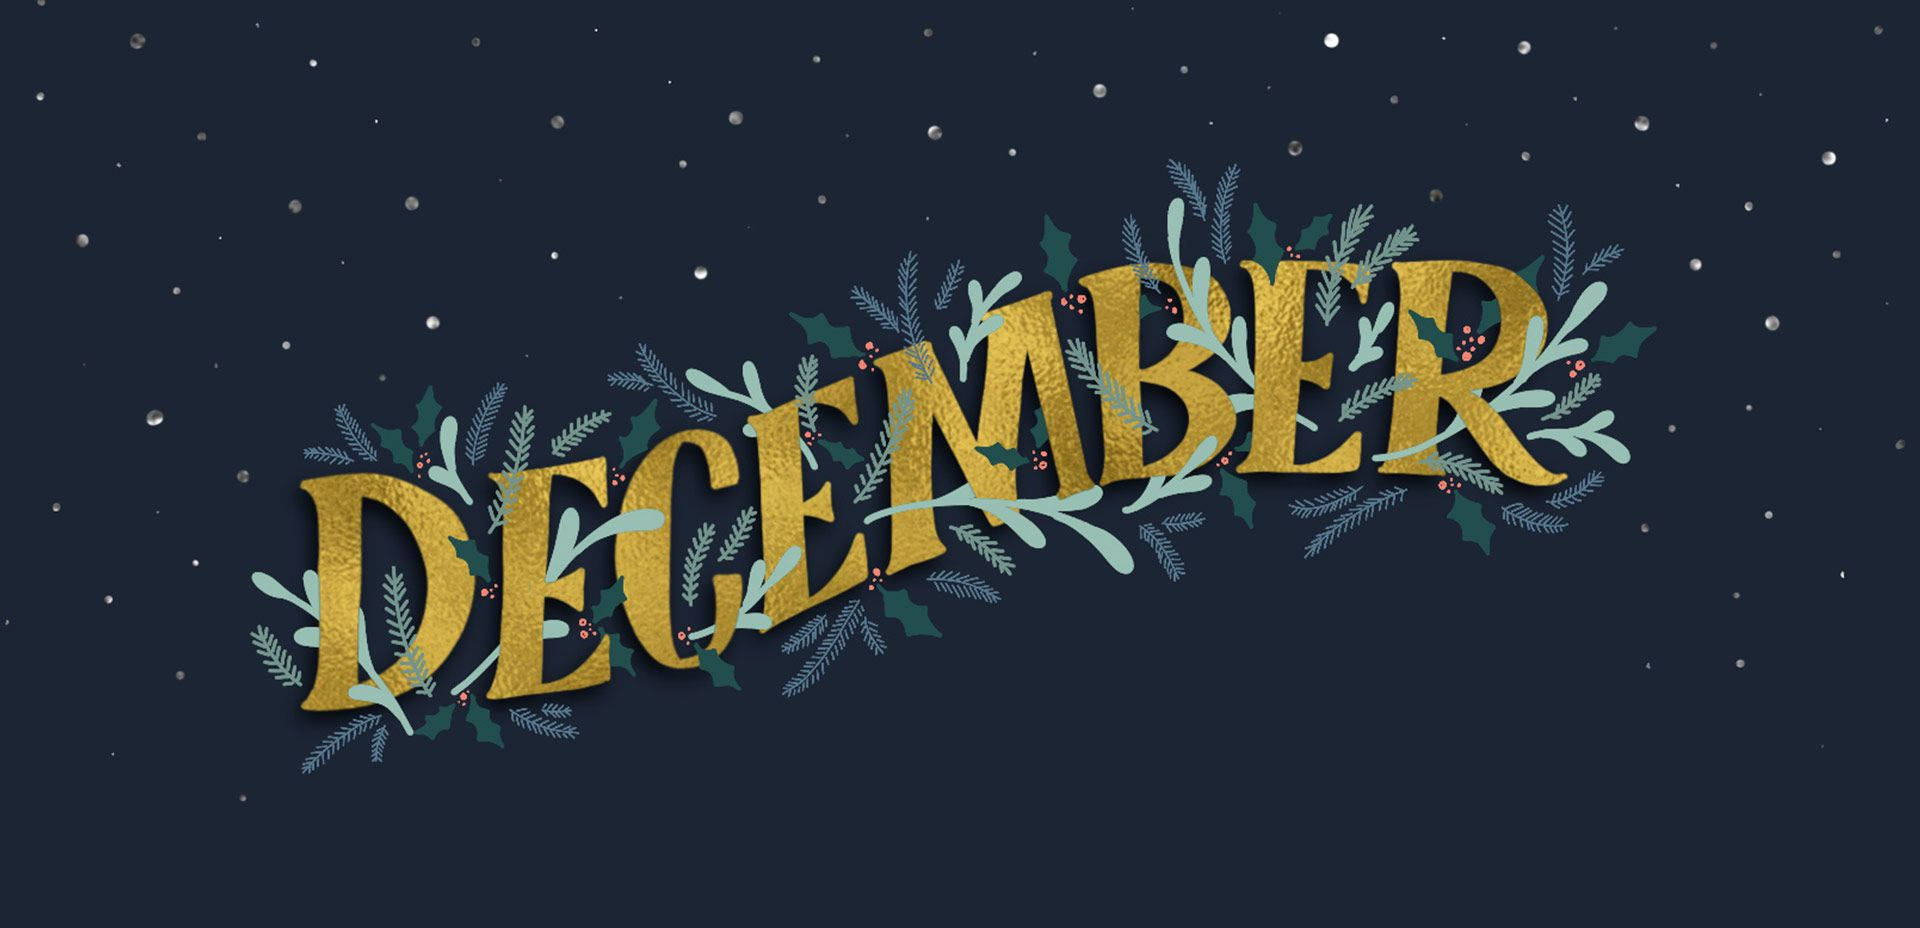 December Lettering Design Background